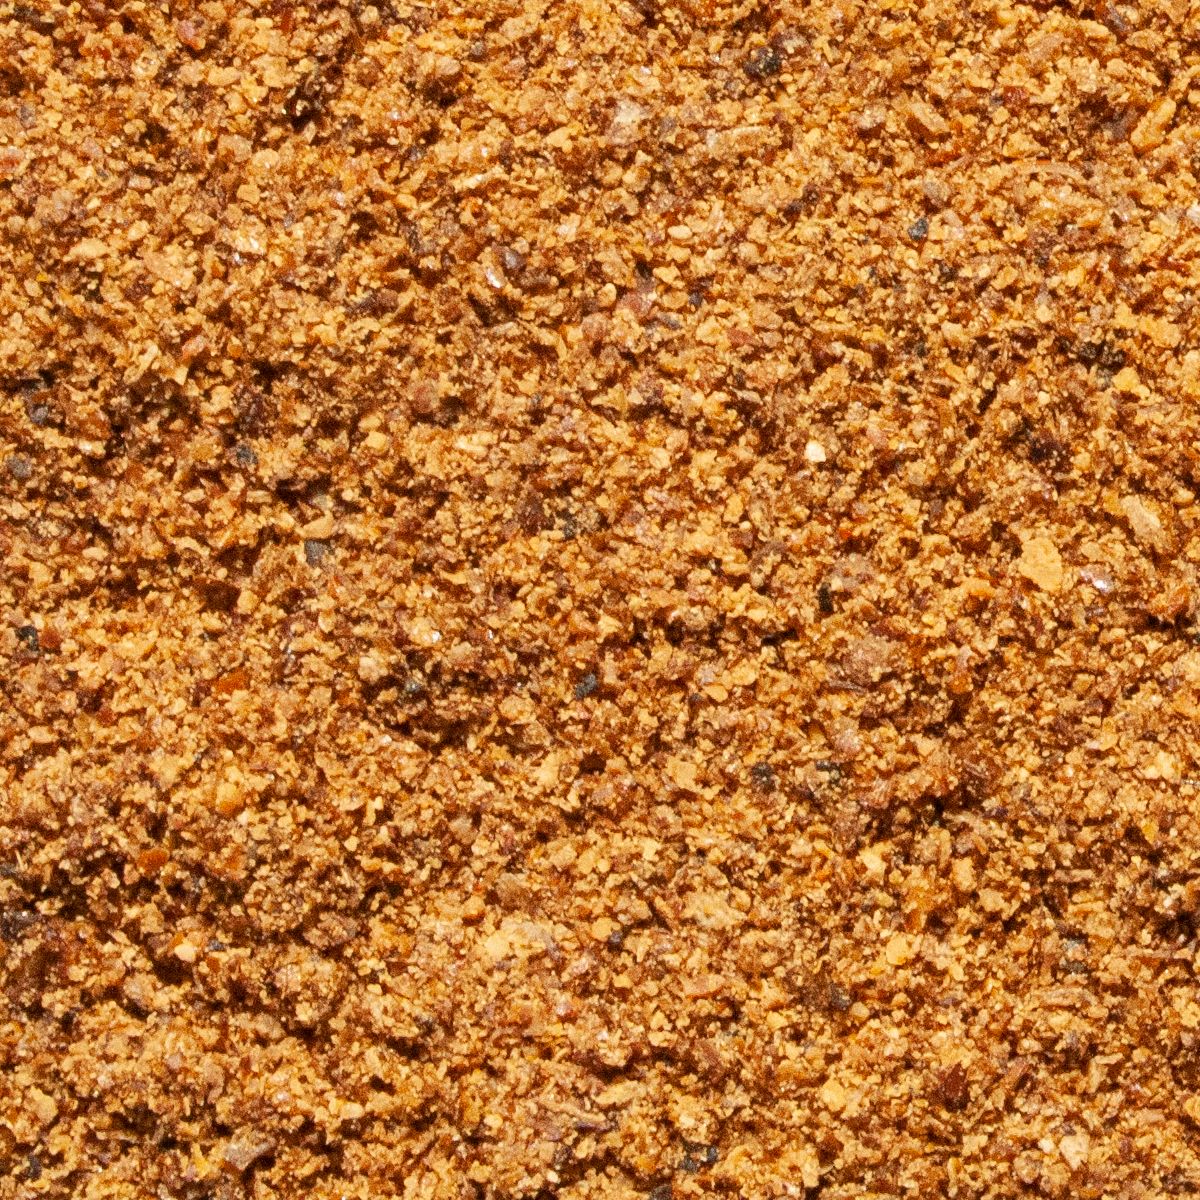 Farina di Baco da seta Vivani - 1 kg